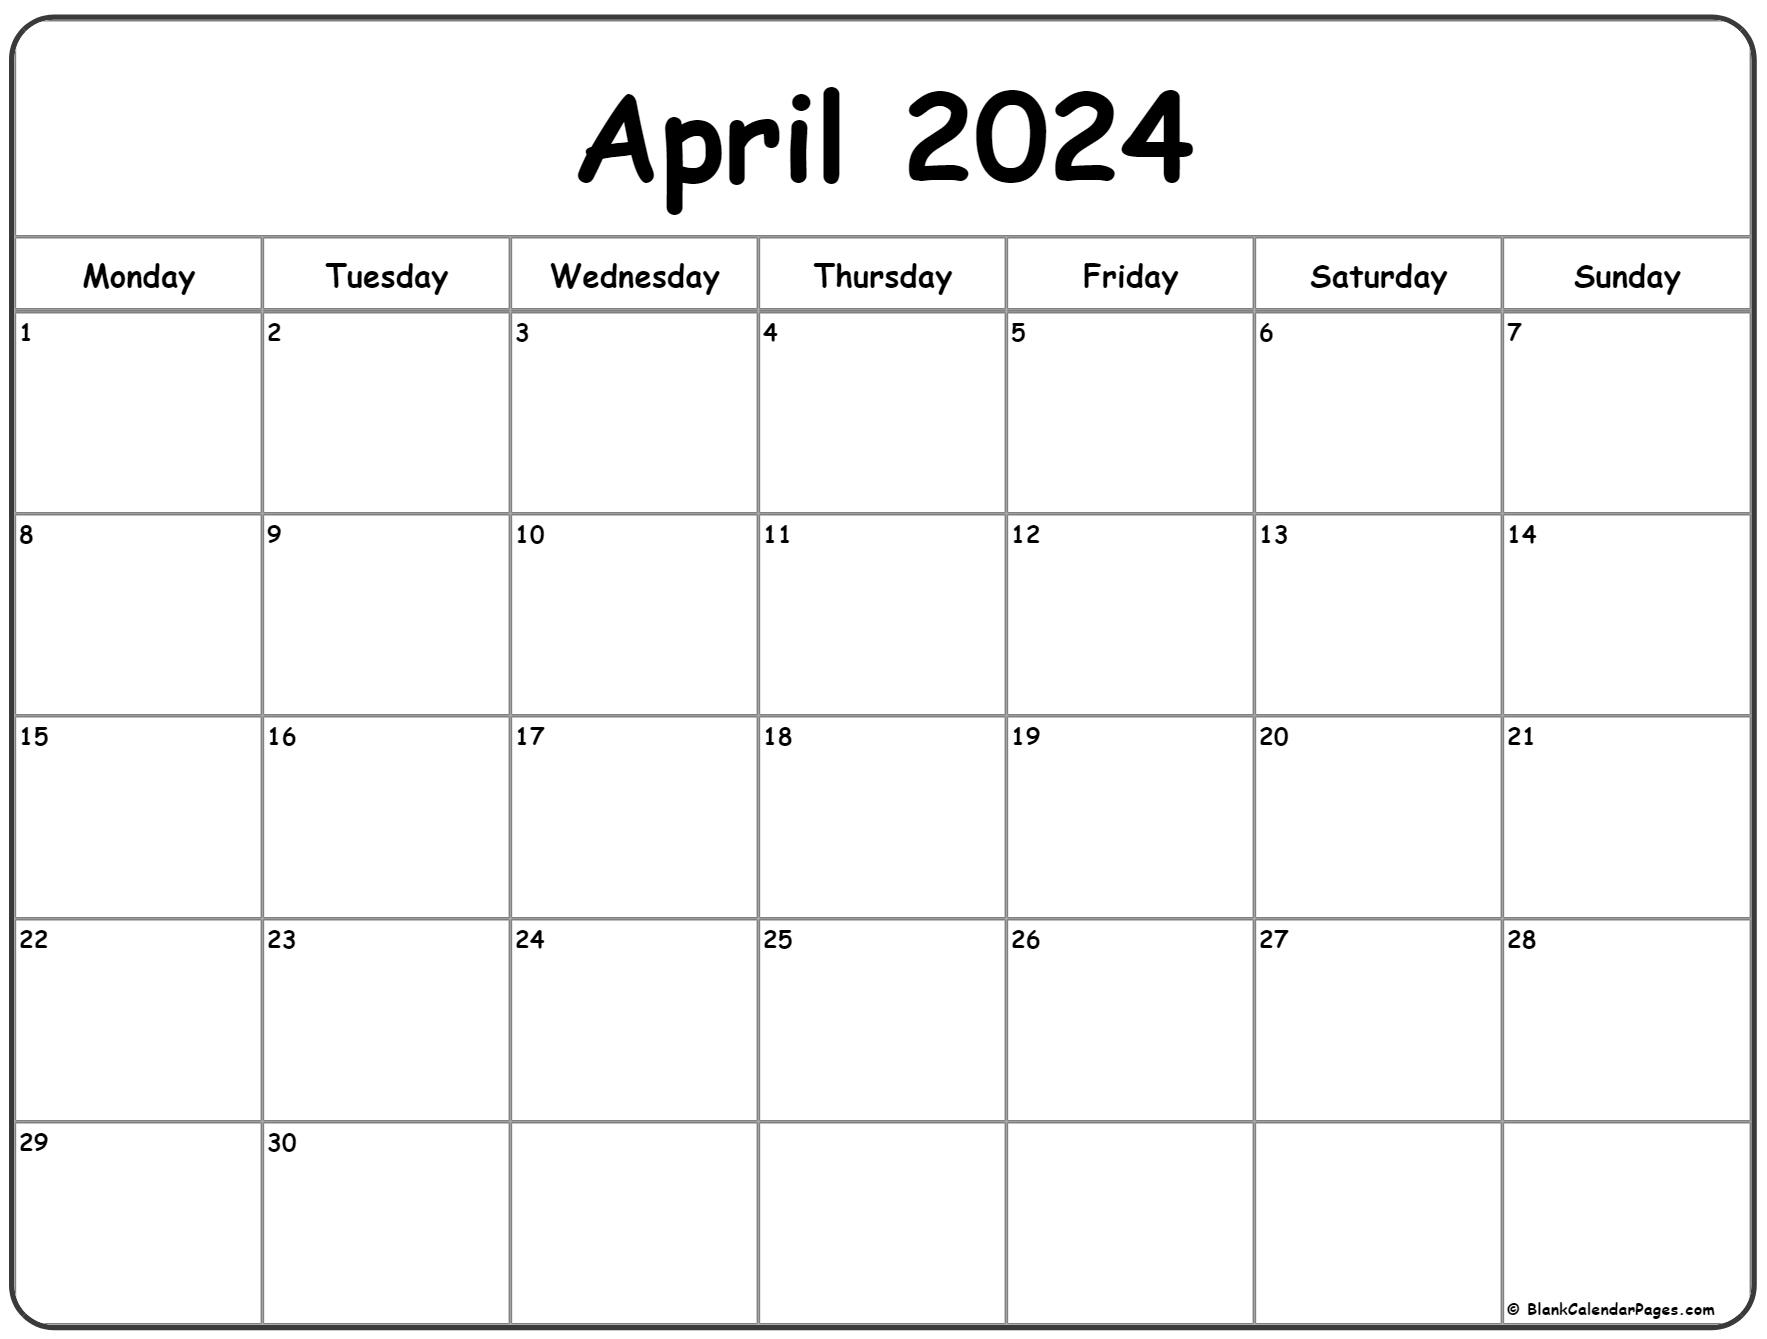 April 2024 Monday Calendar | Monday To Sunday for Printable 2024 April Calendar